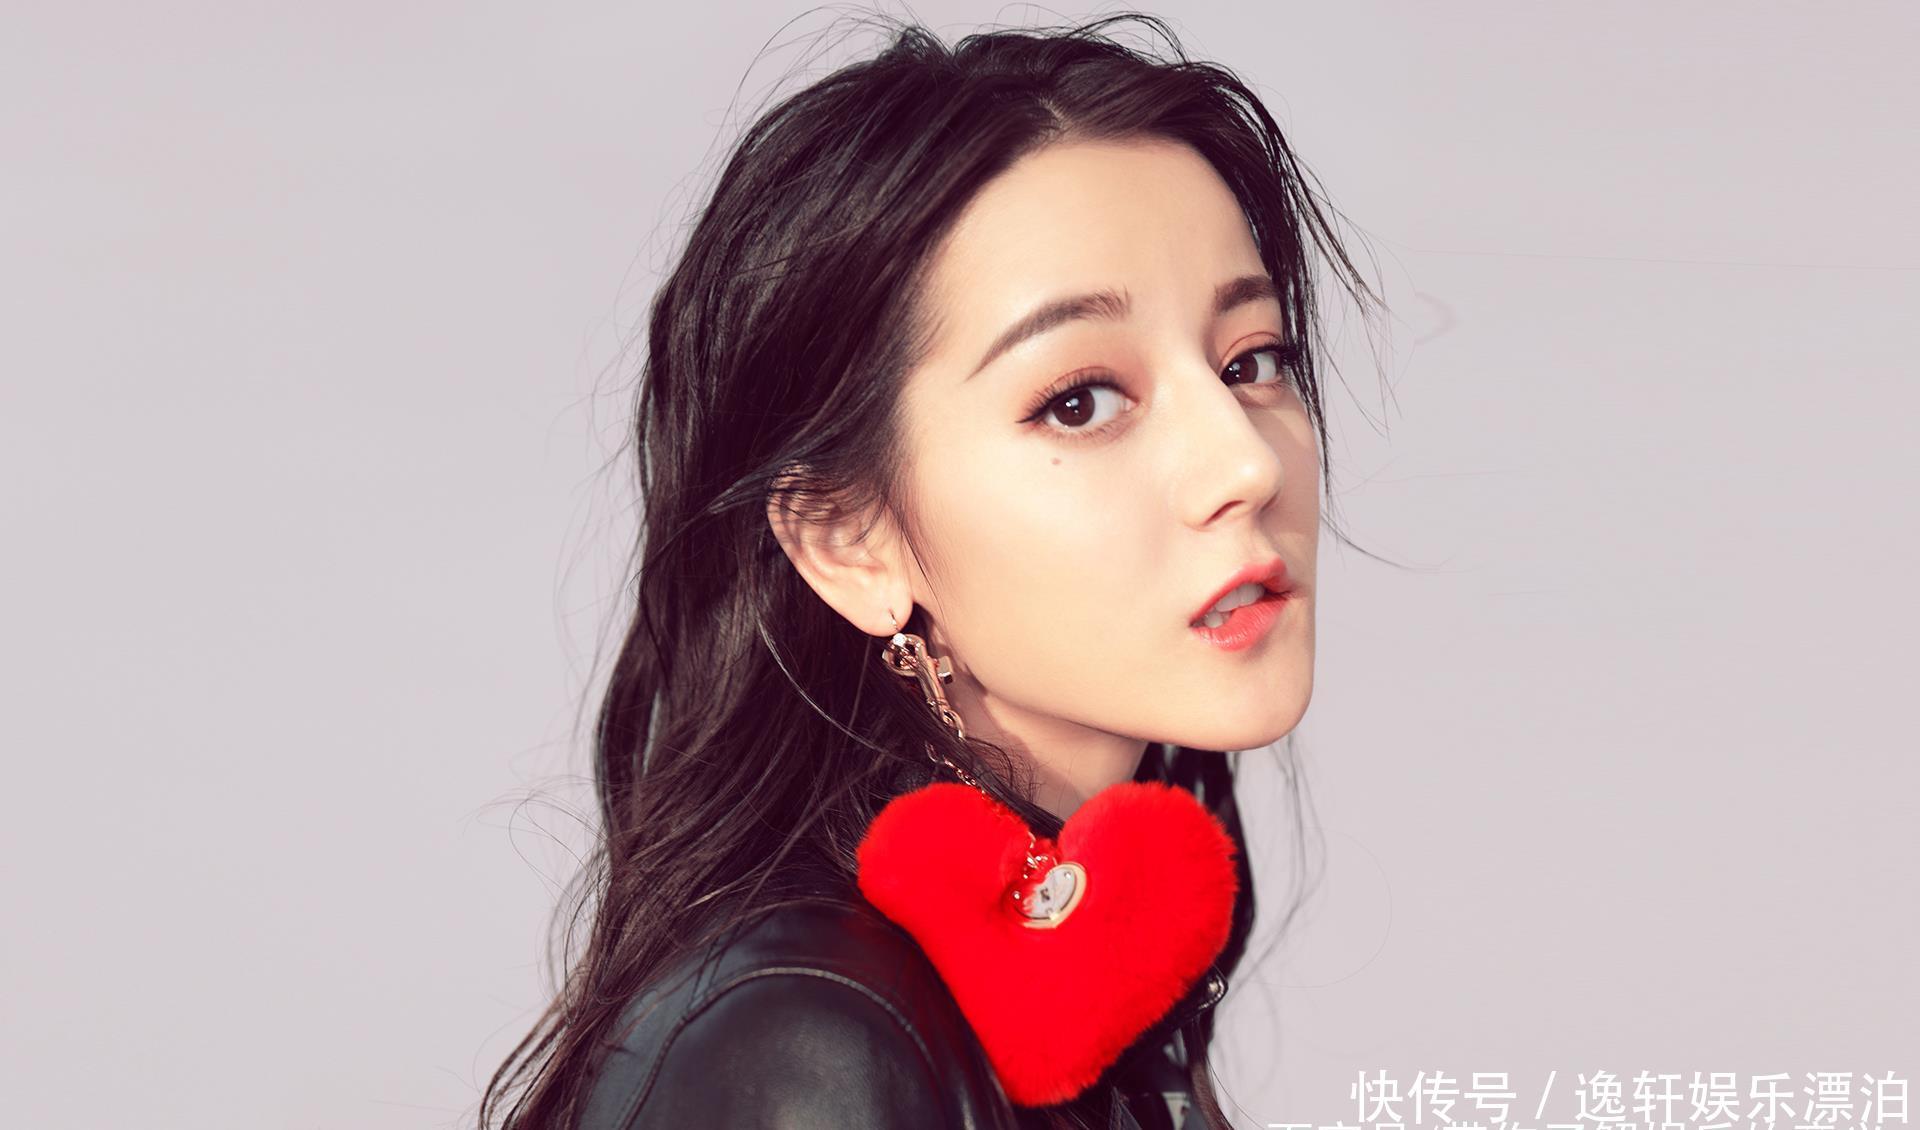 韩国人眼中最美中国女星:刘亦菲垫底,最美是热